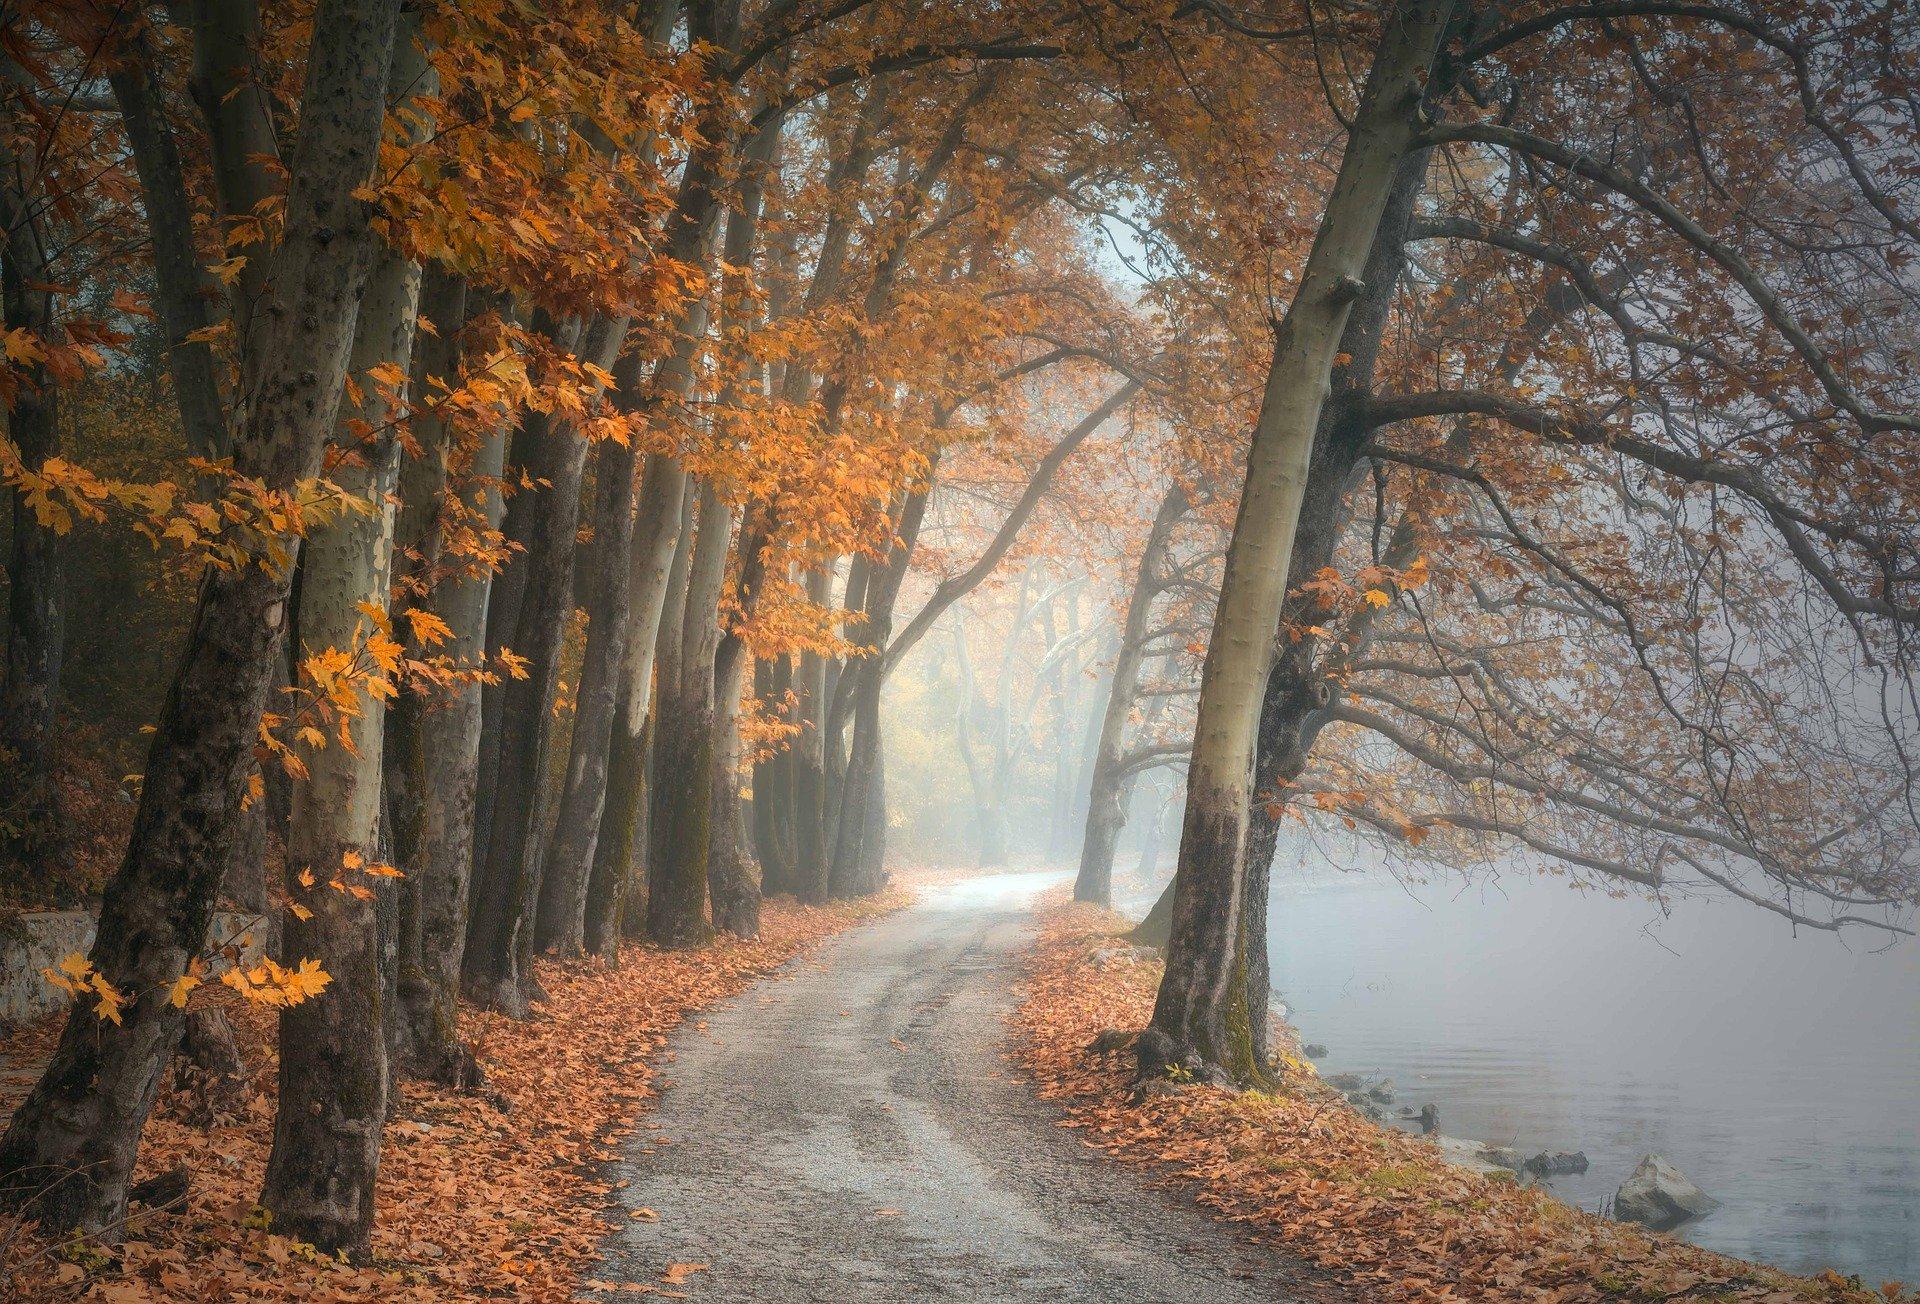 Waldweg an nebeligem See. Herbstlaub auf und unter den Bäumen.